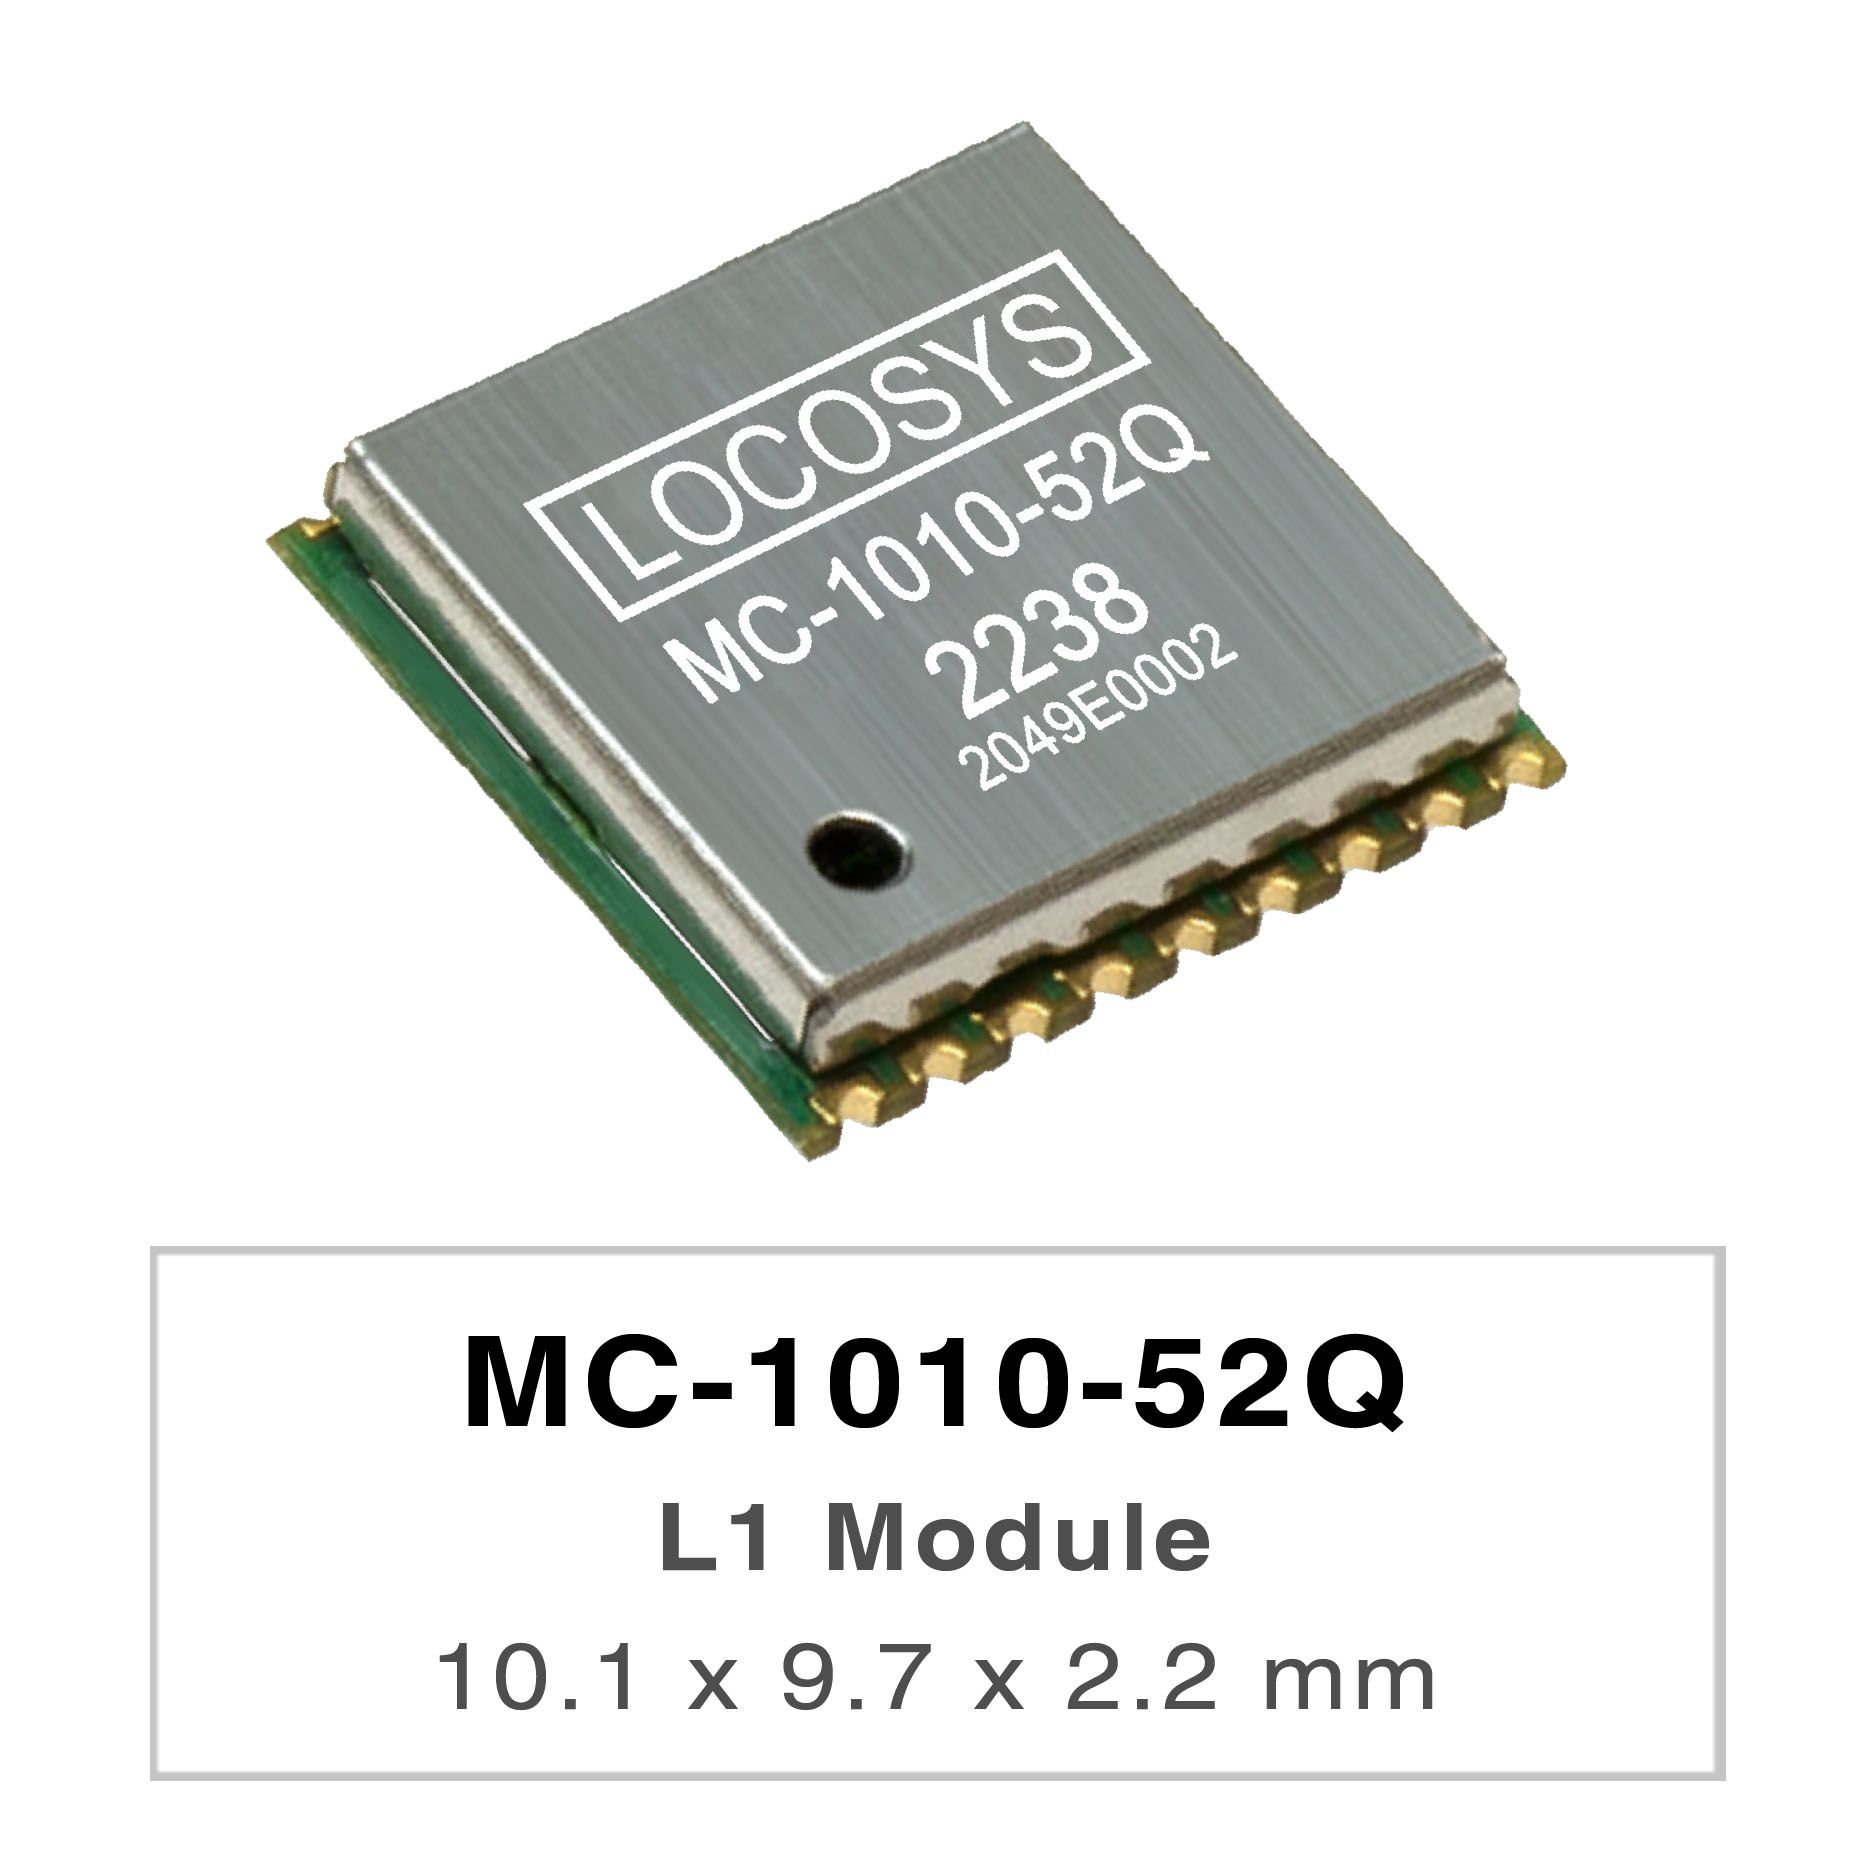 LOCOSYS MC-1010-52Q est un module GNSS autonome complet.